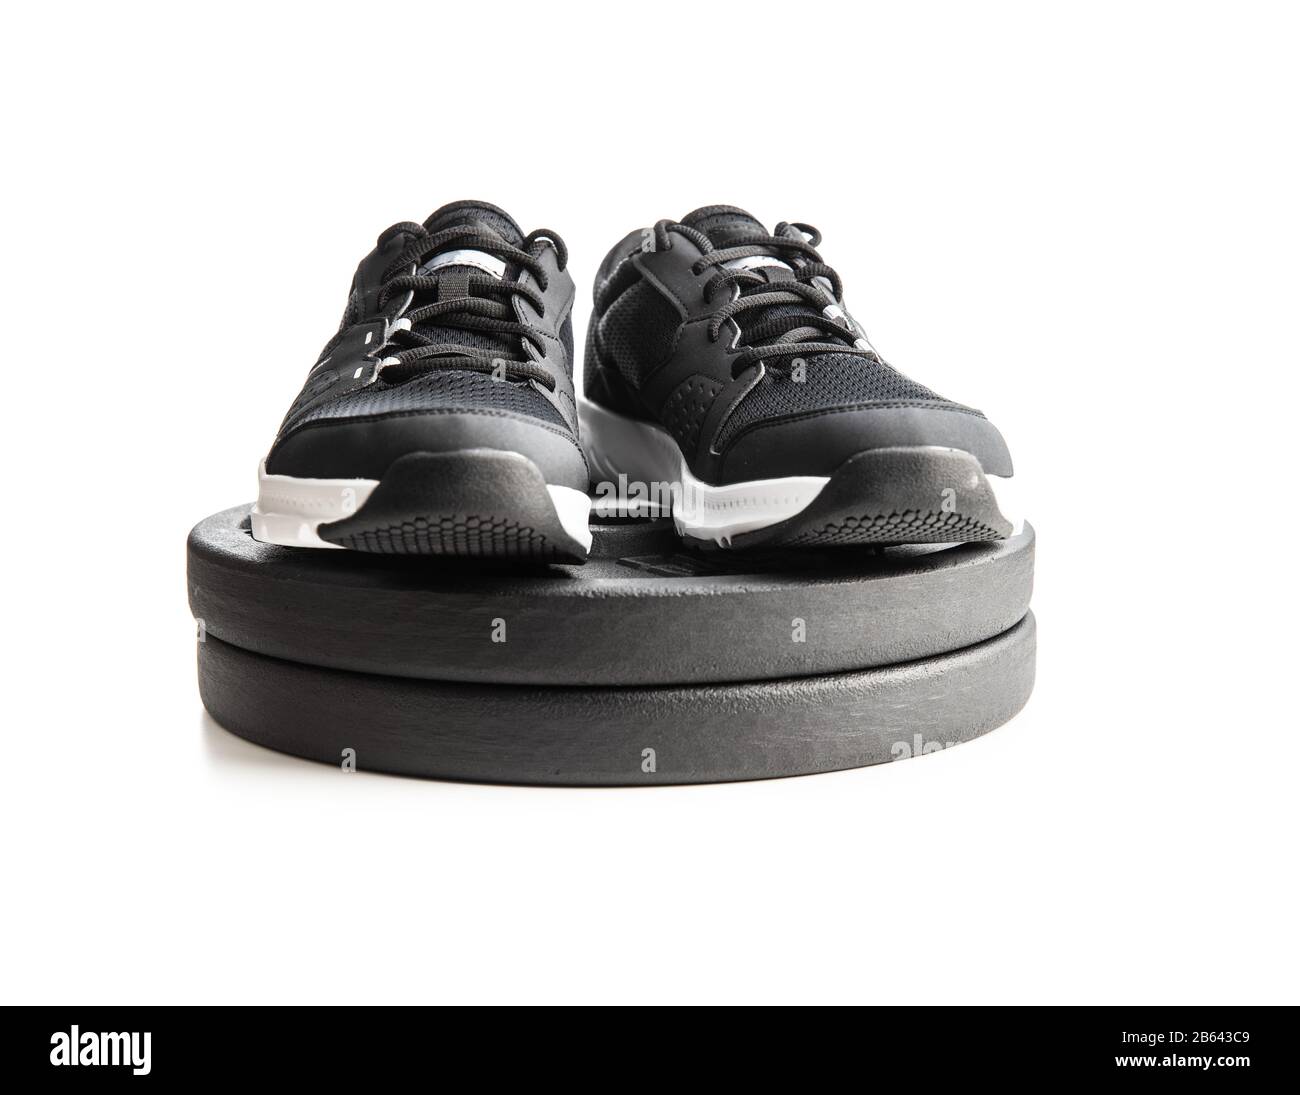 Chaussures et haltères de sport noires isolées sur fond blanc. Banque D'Images